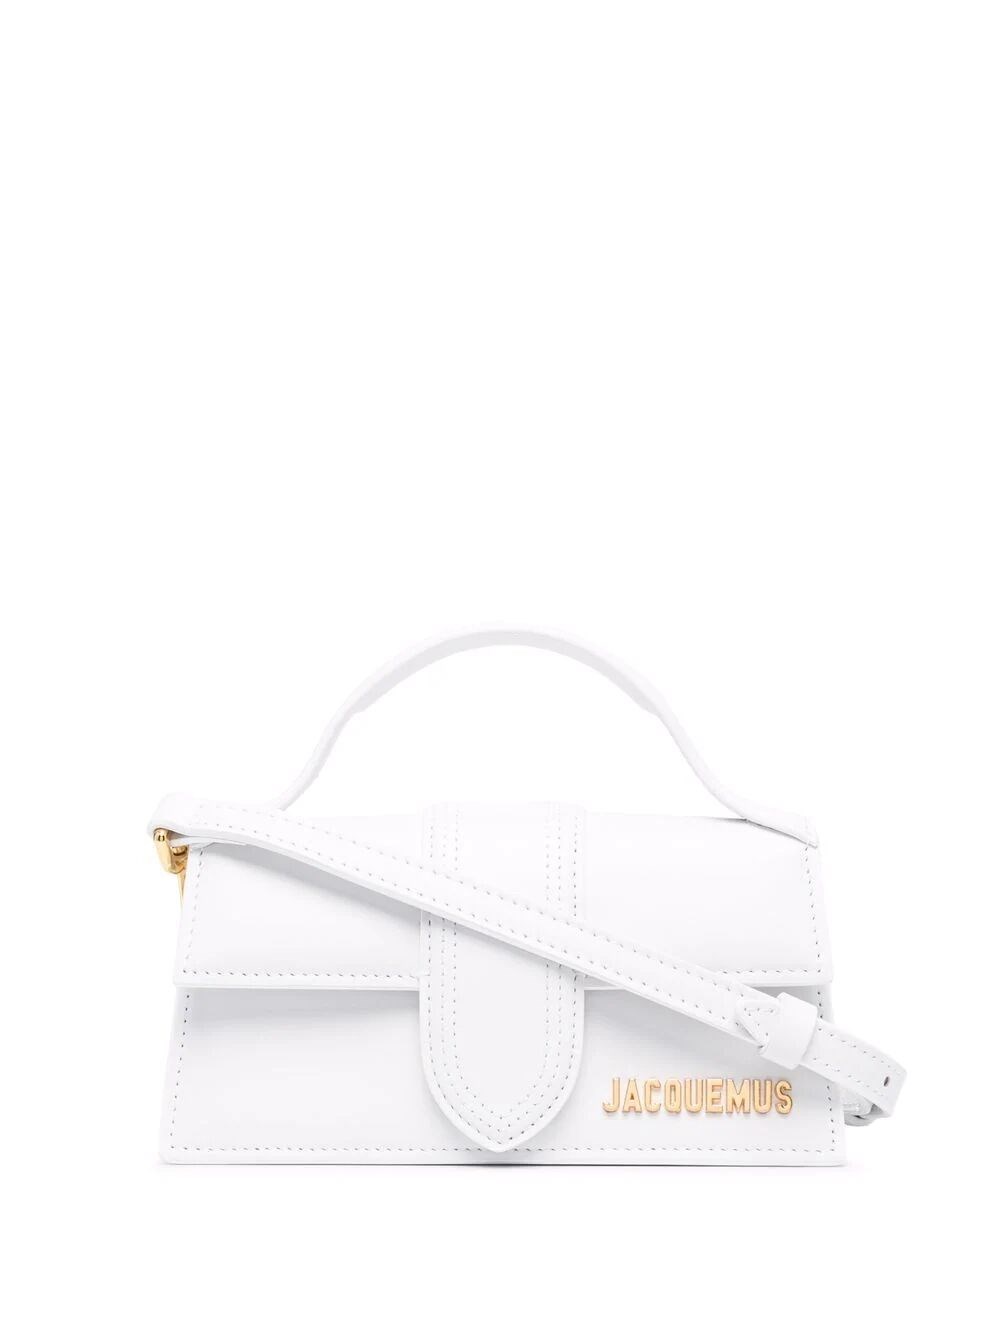 Jacquemus Le Bambino Small Handbag In White